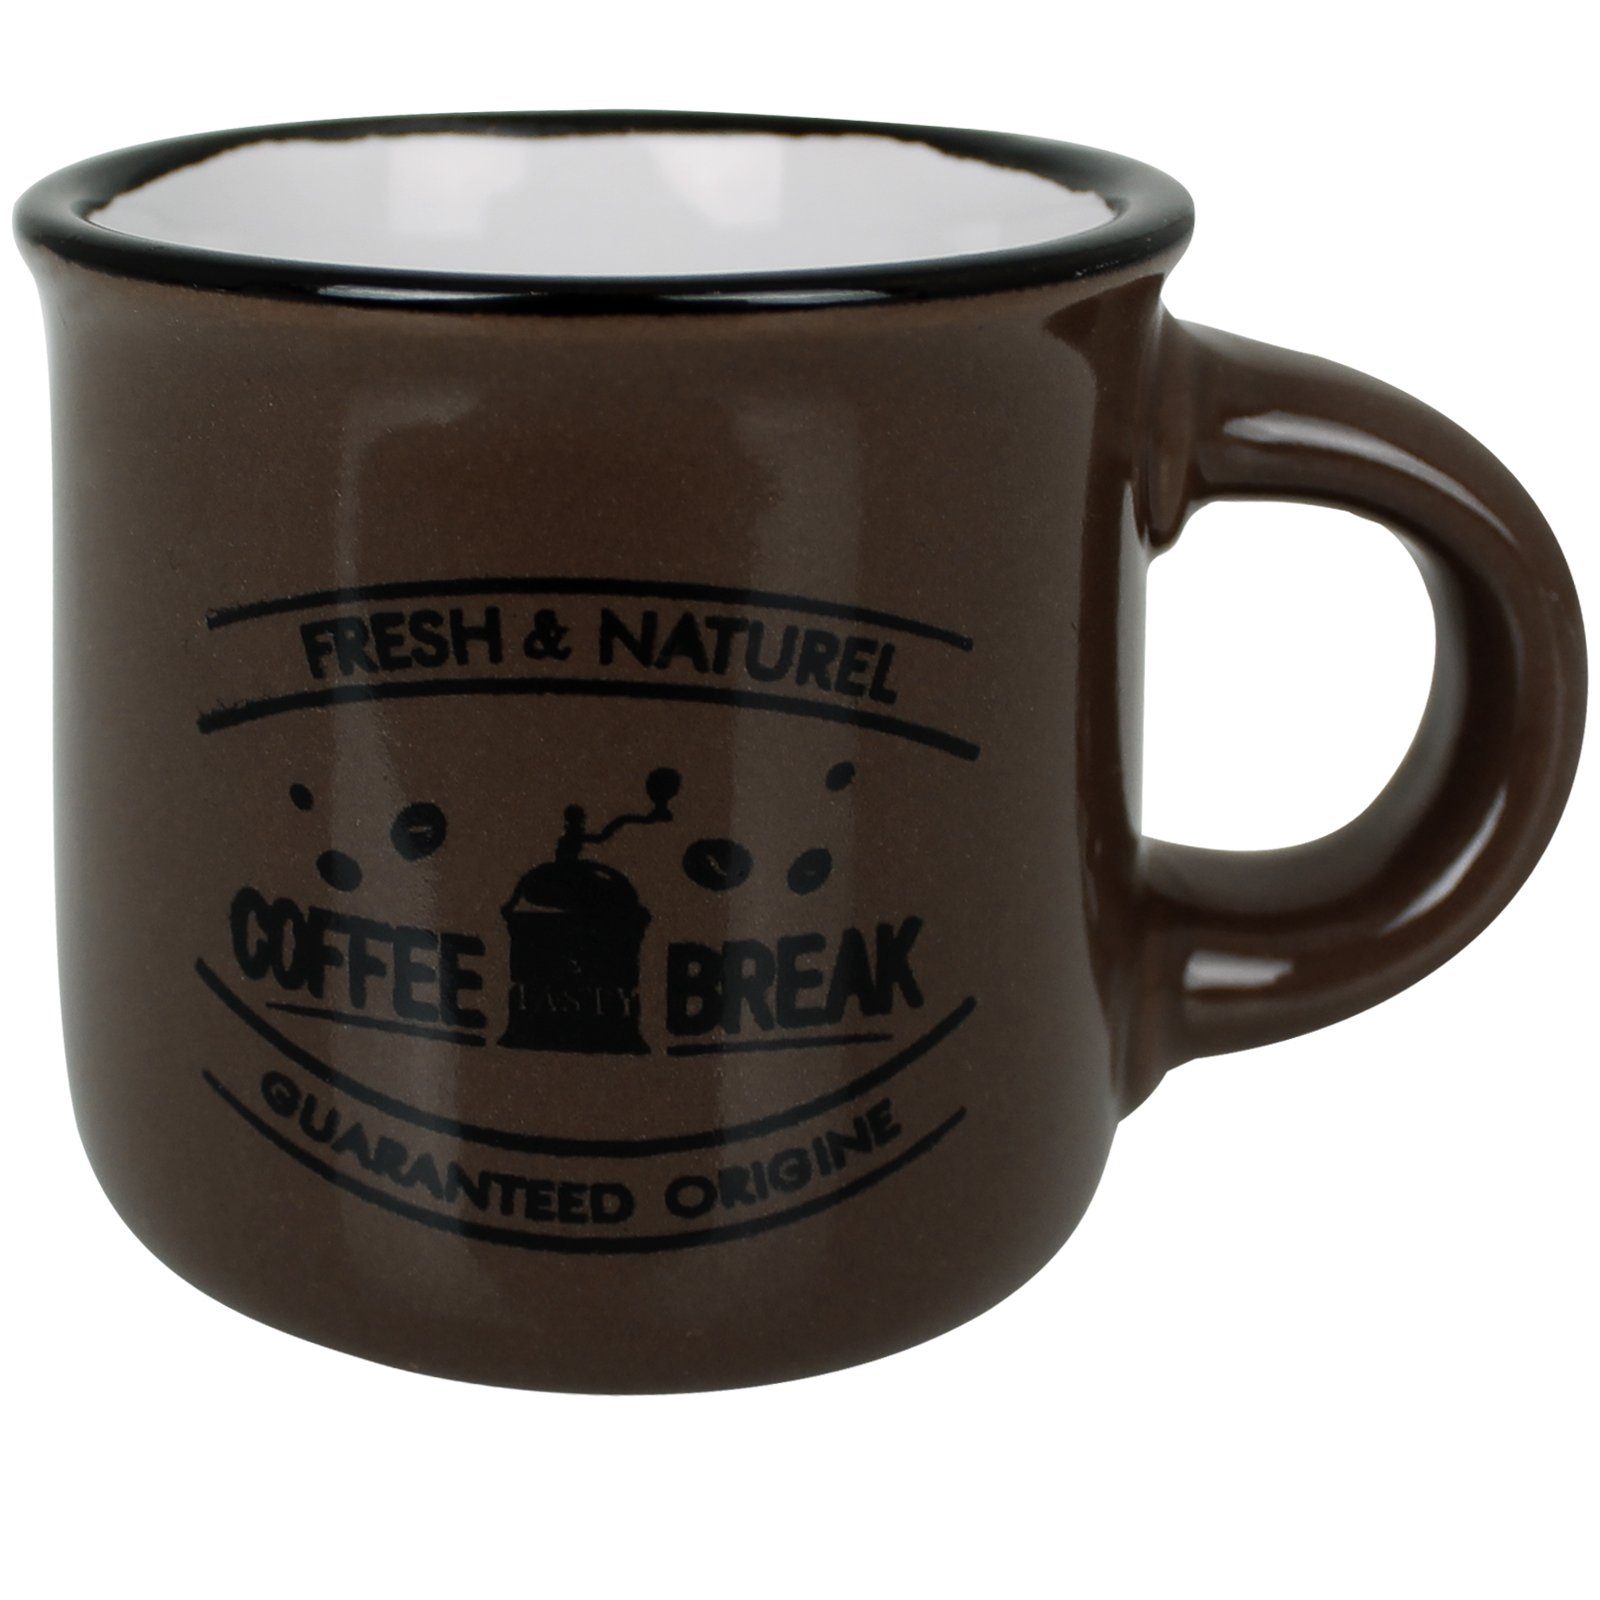 Koopman Tasse Kaffeetassen Bistro 60 ml Tee Kaffee Henkeltassen, Set Set Becher Kaffeegeschirr Tassenset 6er Geschirr Kaffeebecher